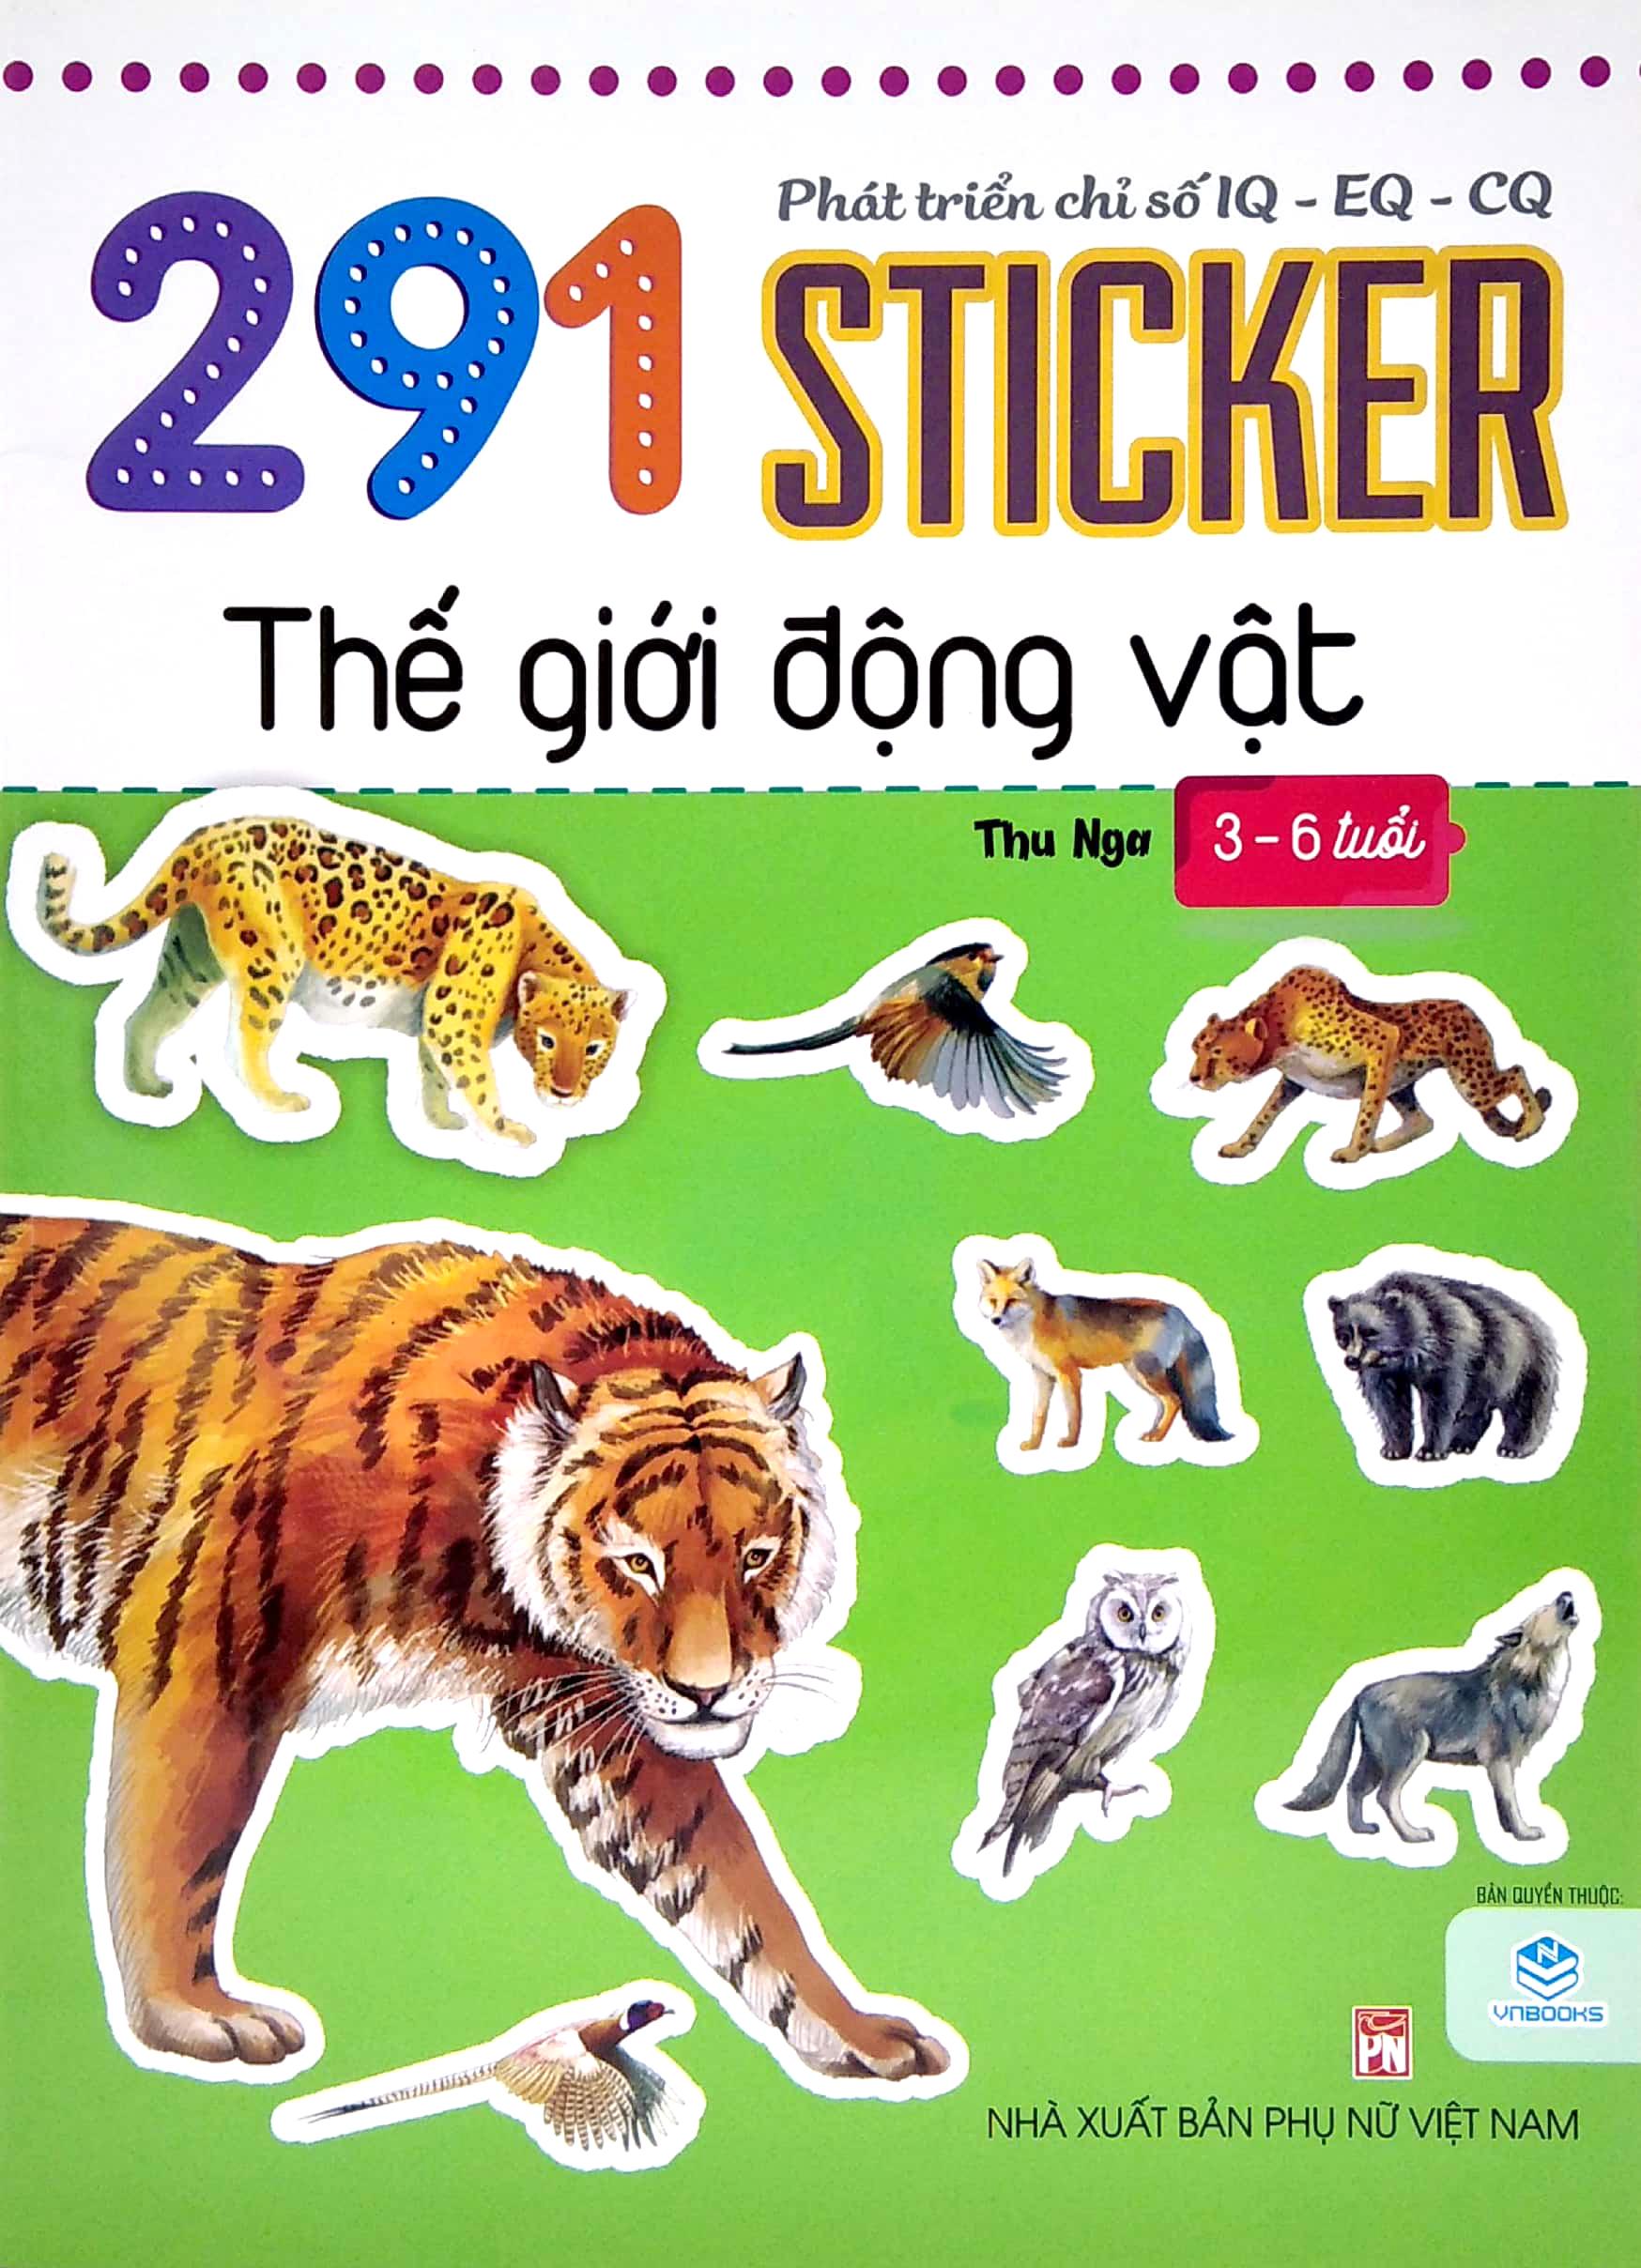 Phát Triển Chỉ Số IQ - EQ - CQ - 291 Sticker Thế Giới Động Vật (3 - 6 Tuổi)